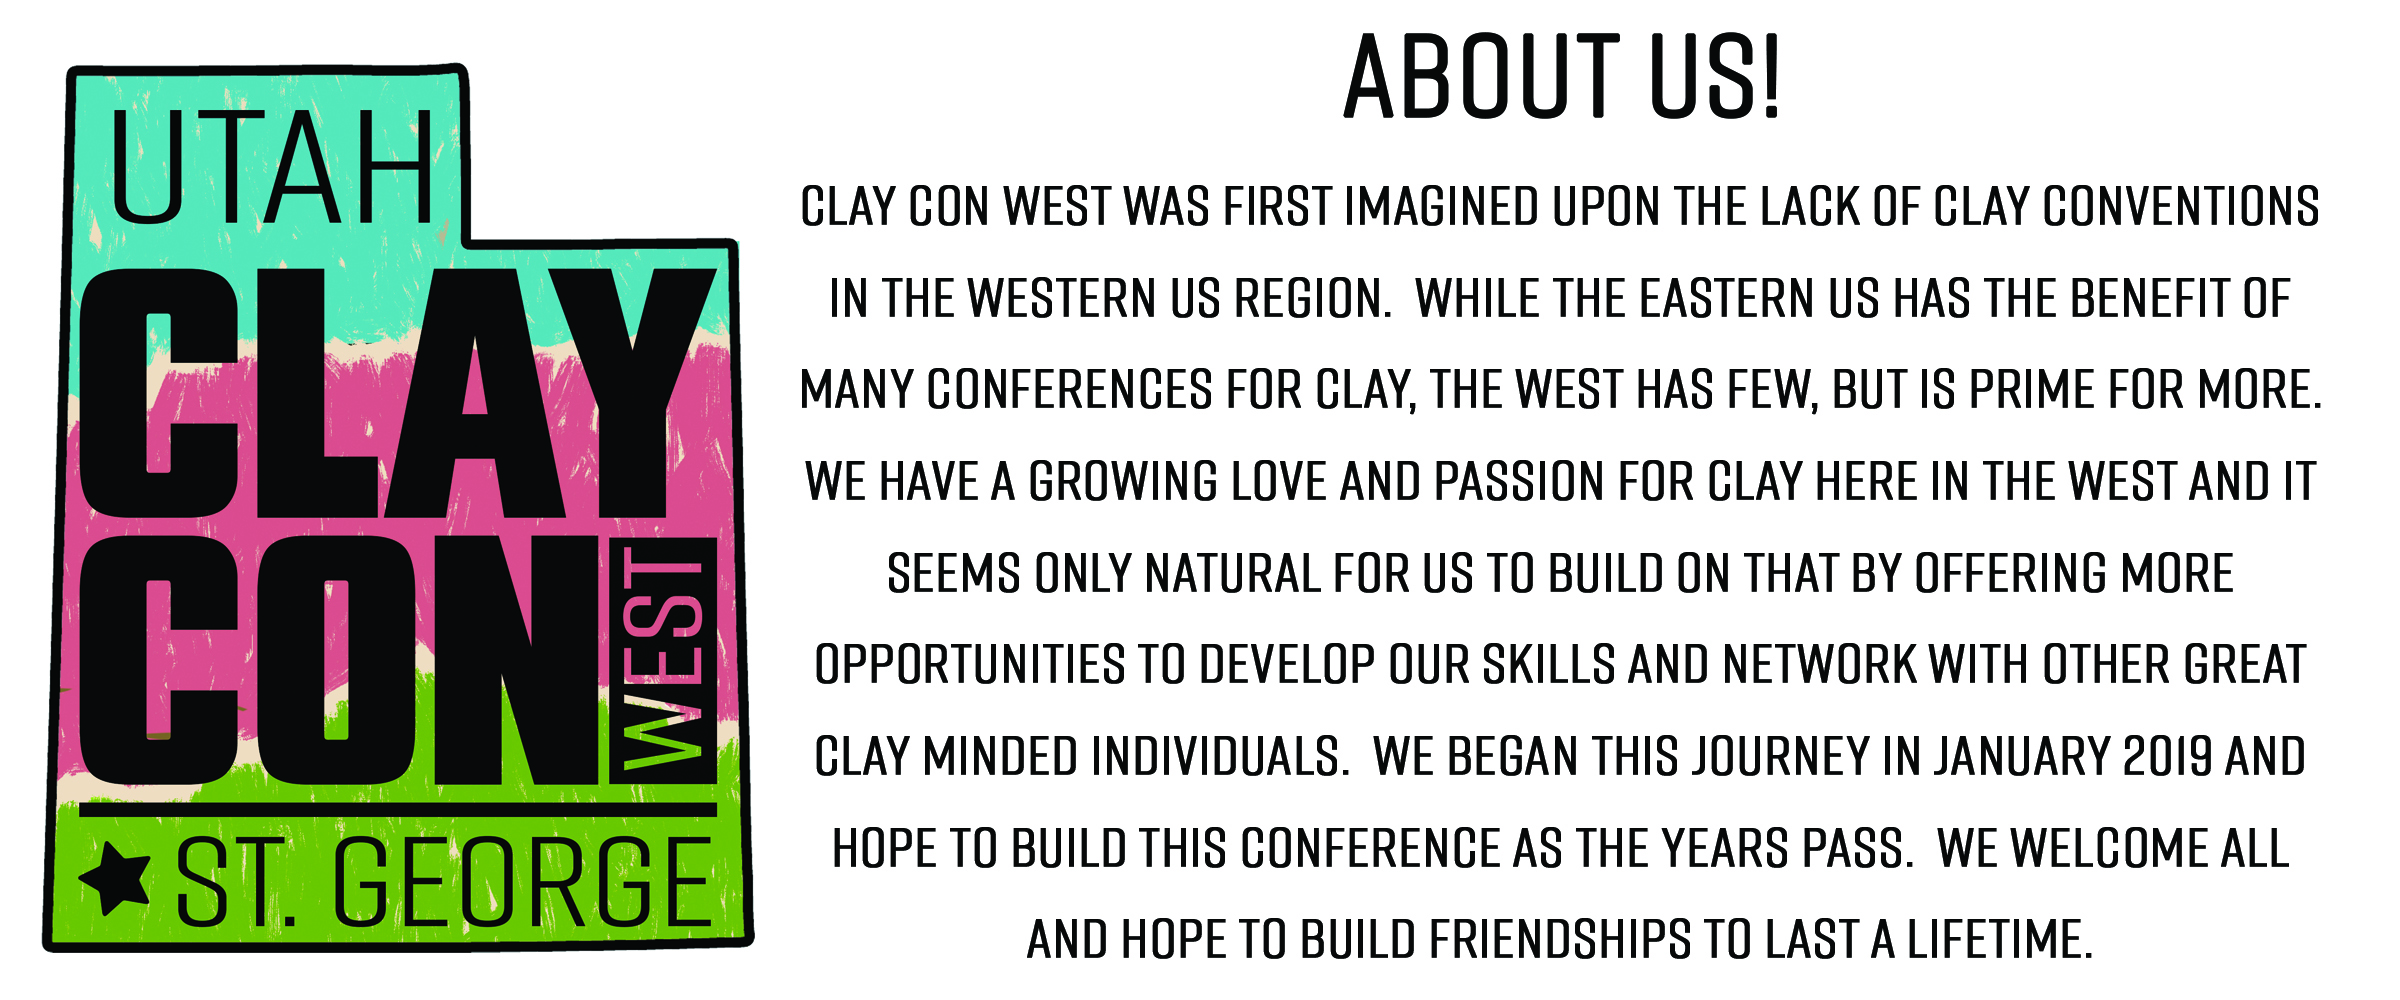 Clay Con West